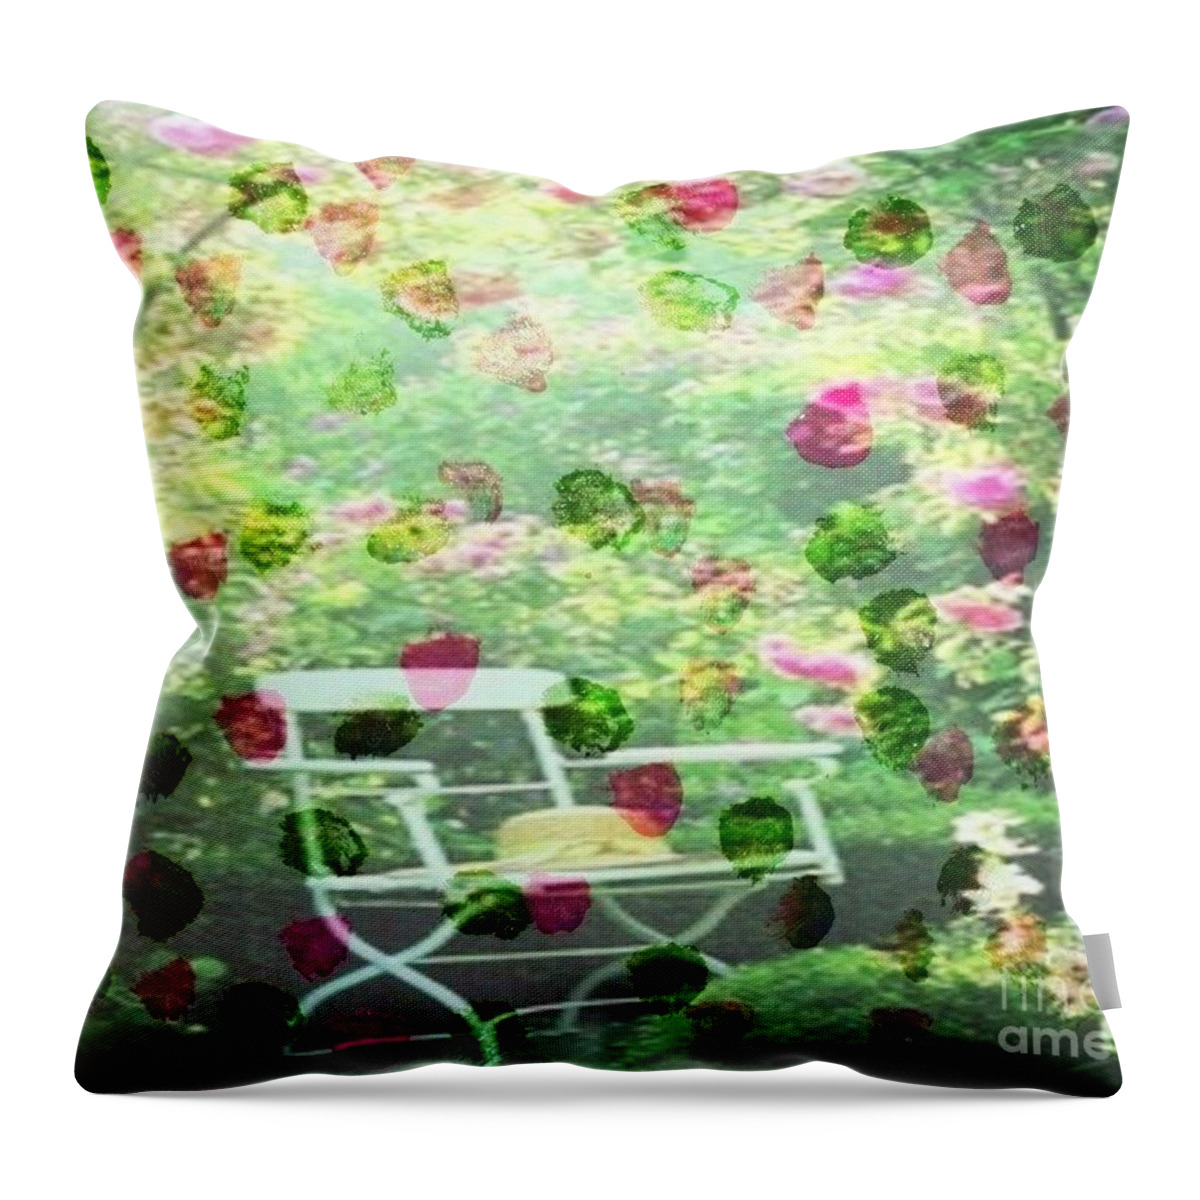 Flower Garden Refuge Throw Pillow featuring the painting Flower Garden Refuge by PainterArtist FIN